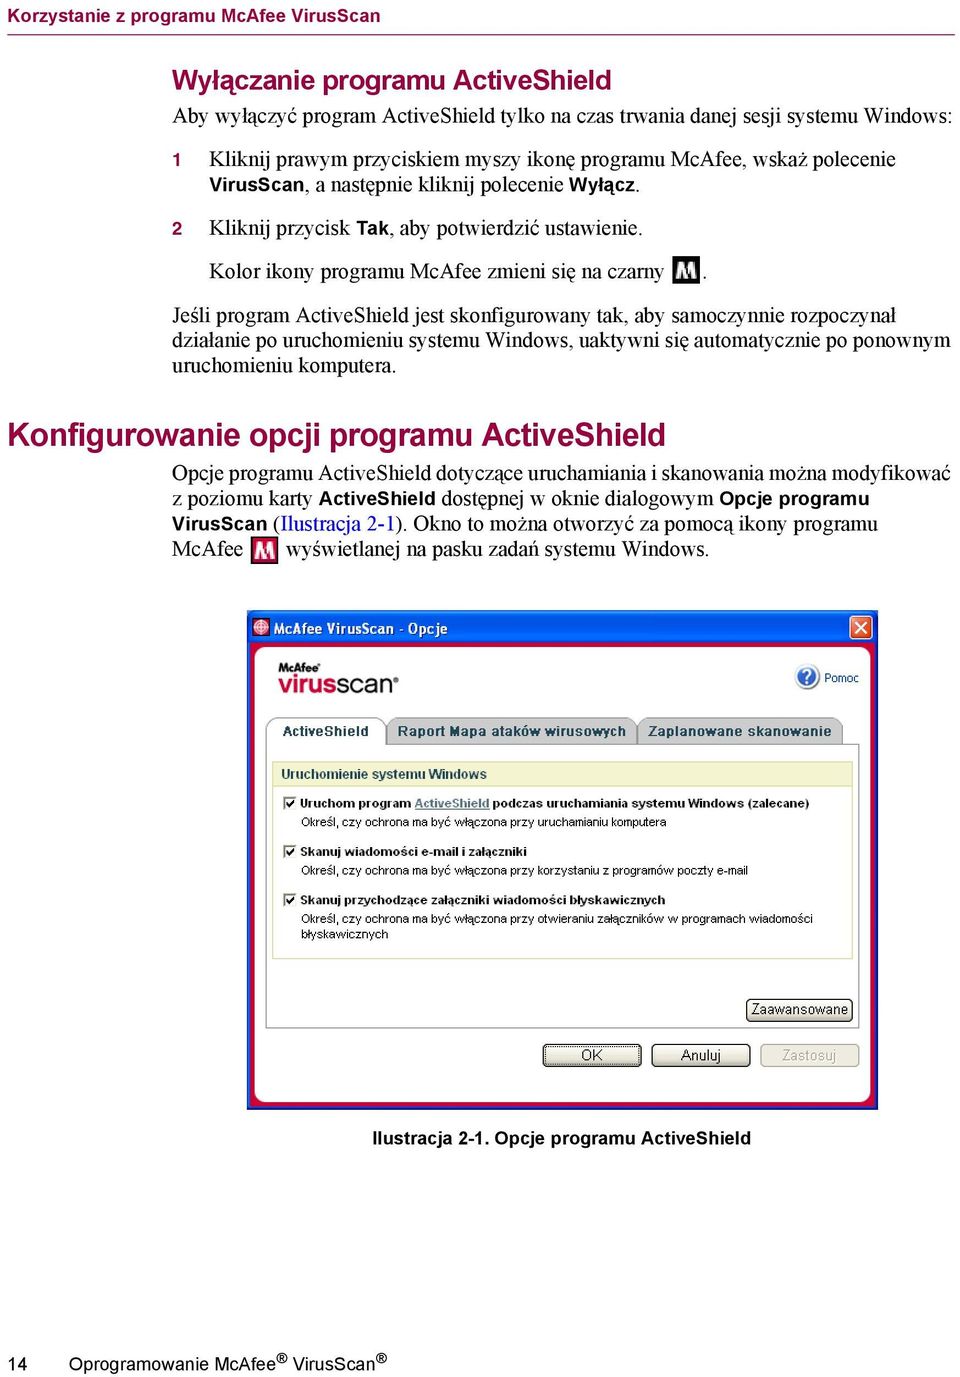 Jeśli program ActiveShield jest skonfigurowany tak, aby samoczynnie rozpoczynał działanie po uruchomieniu systemu Windows, uaktywni się automatycznie po ponownym uruchomieniu komputera.